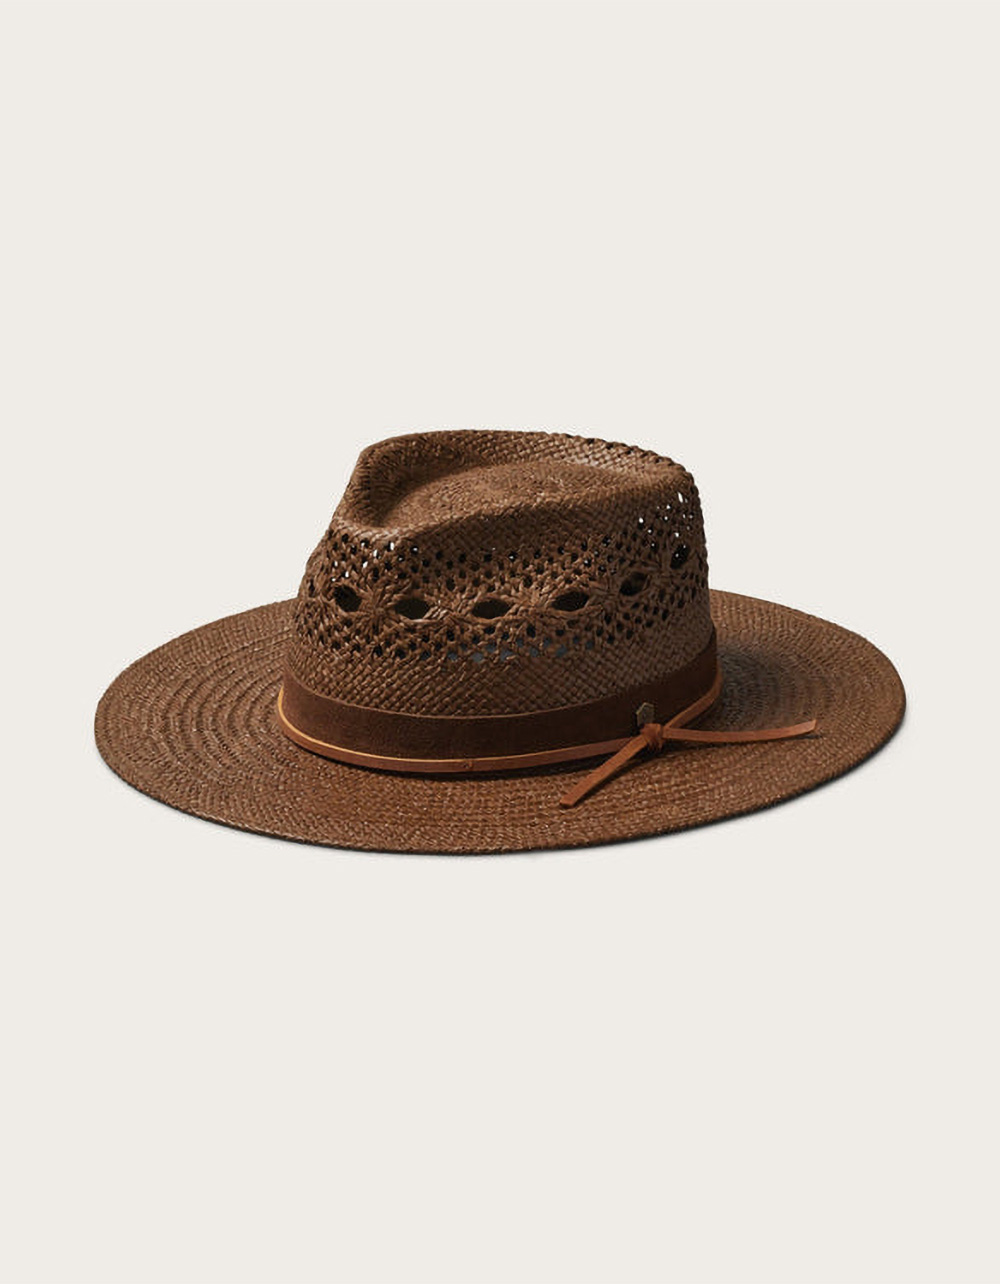 HEMLOCK HAT CO. Miller Fedora Hat